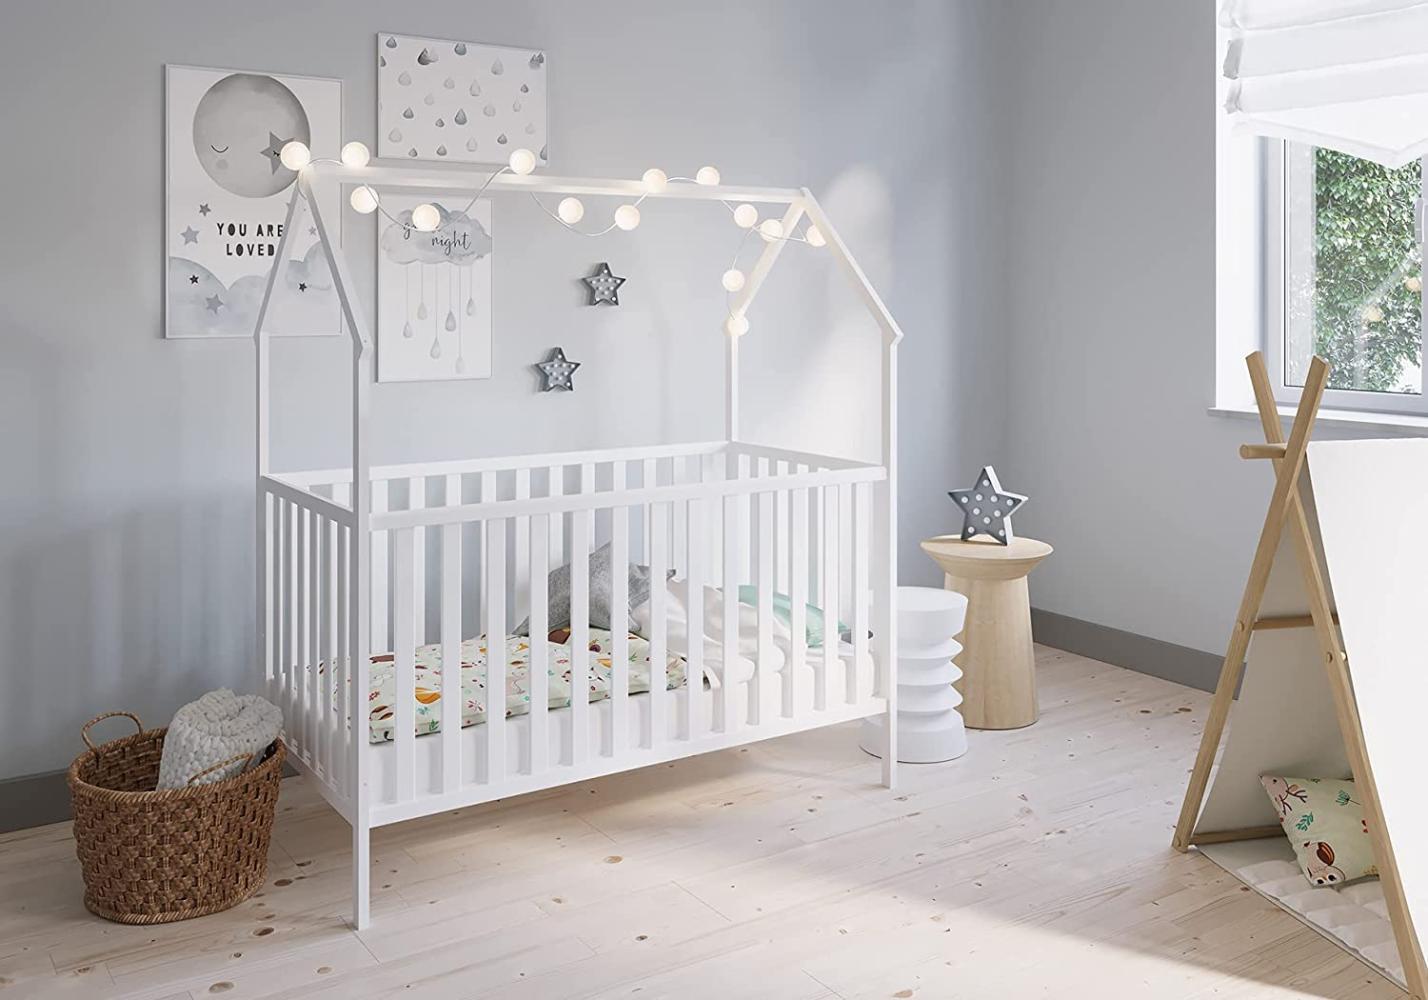 FabiMax 'Schlafmütze' Kinderbett, 70 x 140 cm, weiß, mit Matratze Comfort, Kiefer massiv, 3-fach höhenverstellbar, umbaubar Bild 1